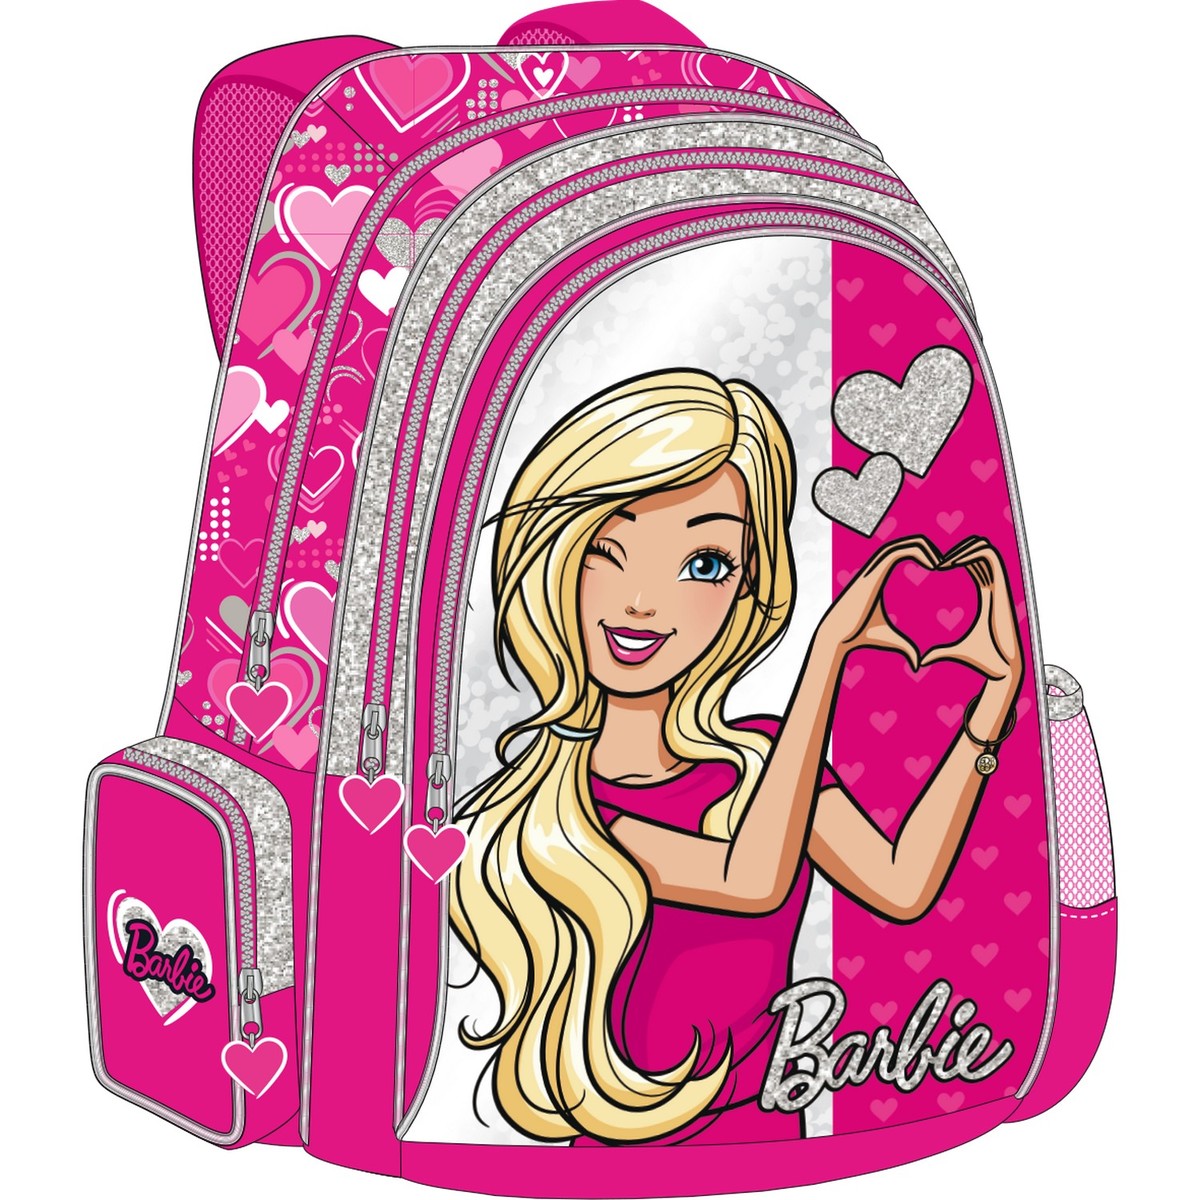 Barbie School Backpack FK160125 18inch